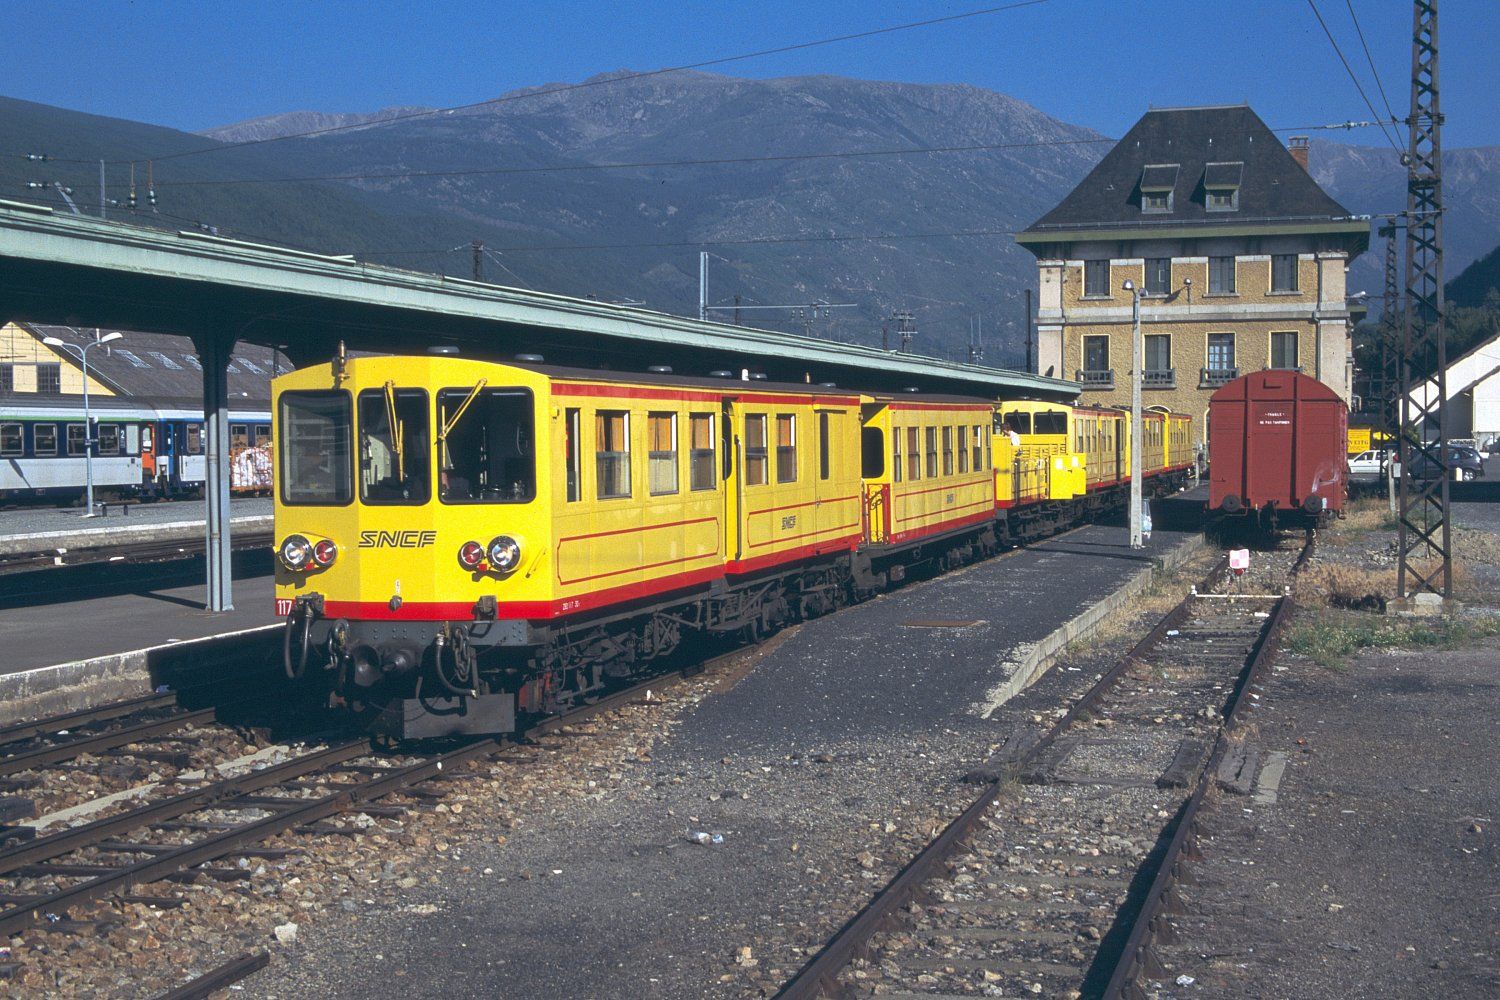 Tren groc a l'estació de La Tor de Querol. Fotografia: Herbert Ortner. Viquipèdia.